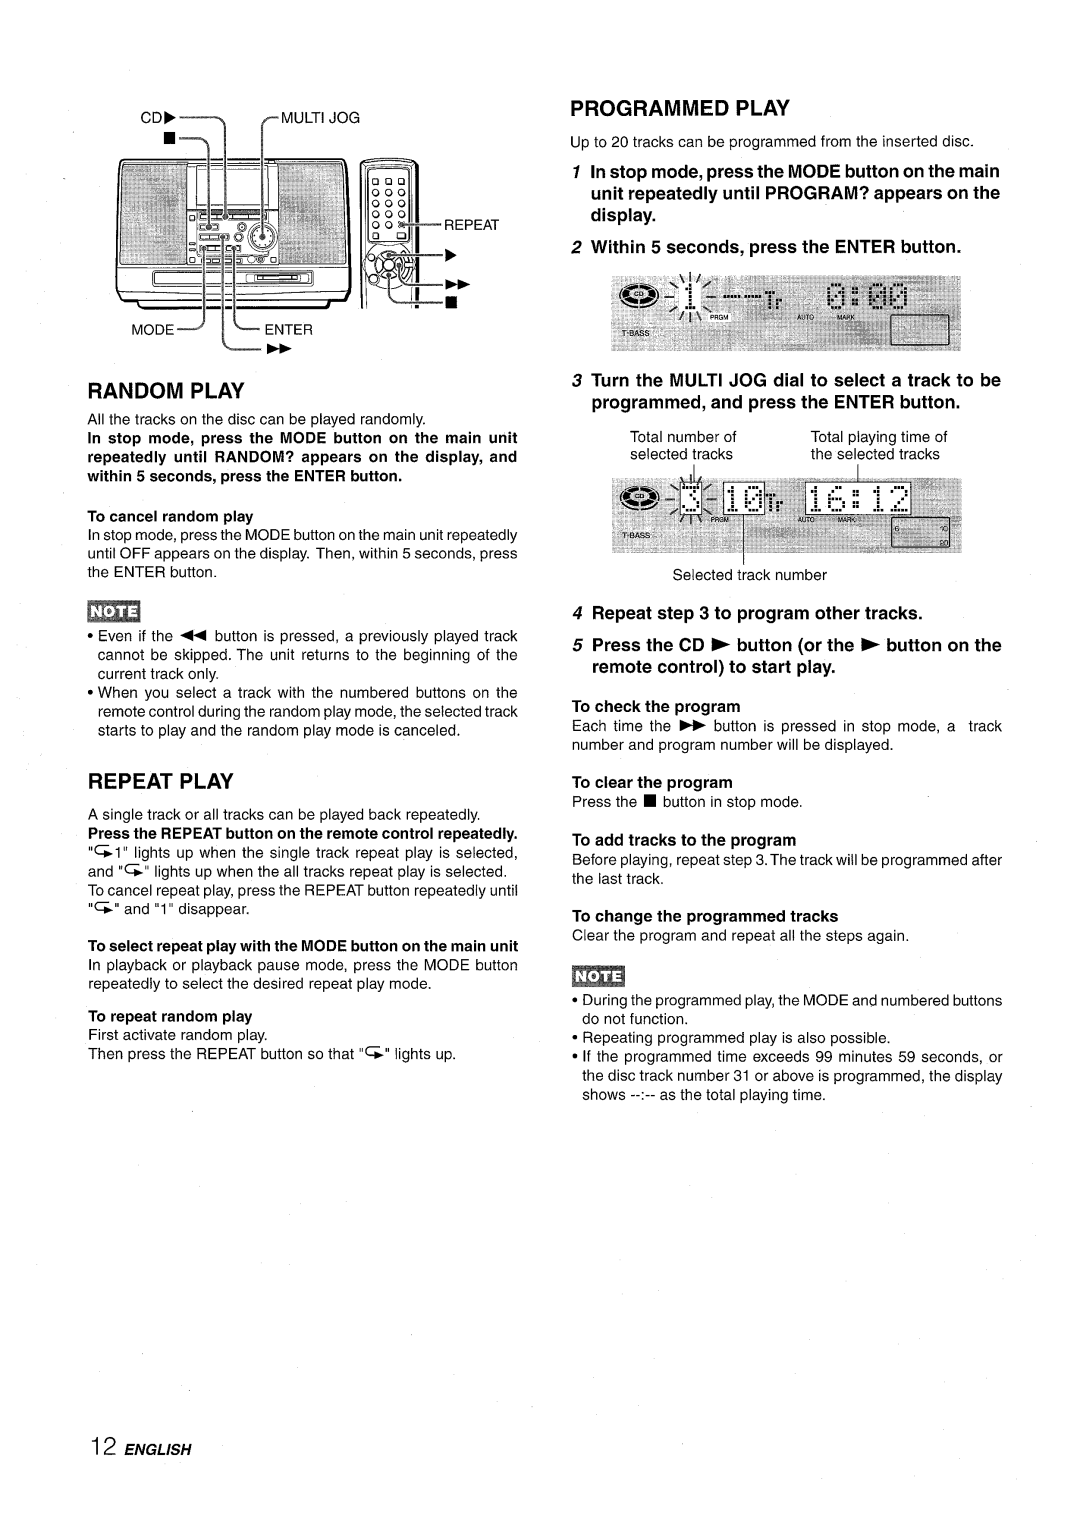 Aiwa CSD-MD50 manual Ii L-#, Repeat Play, Programmed Play 